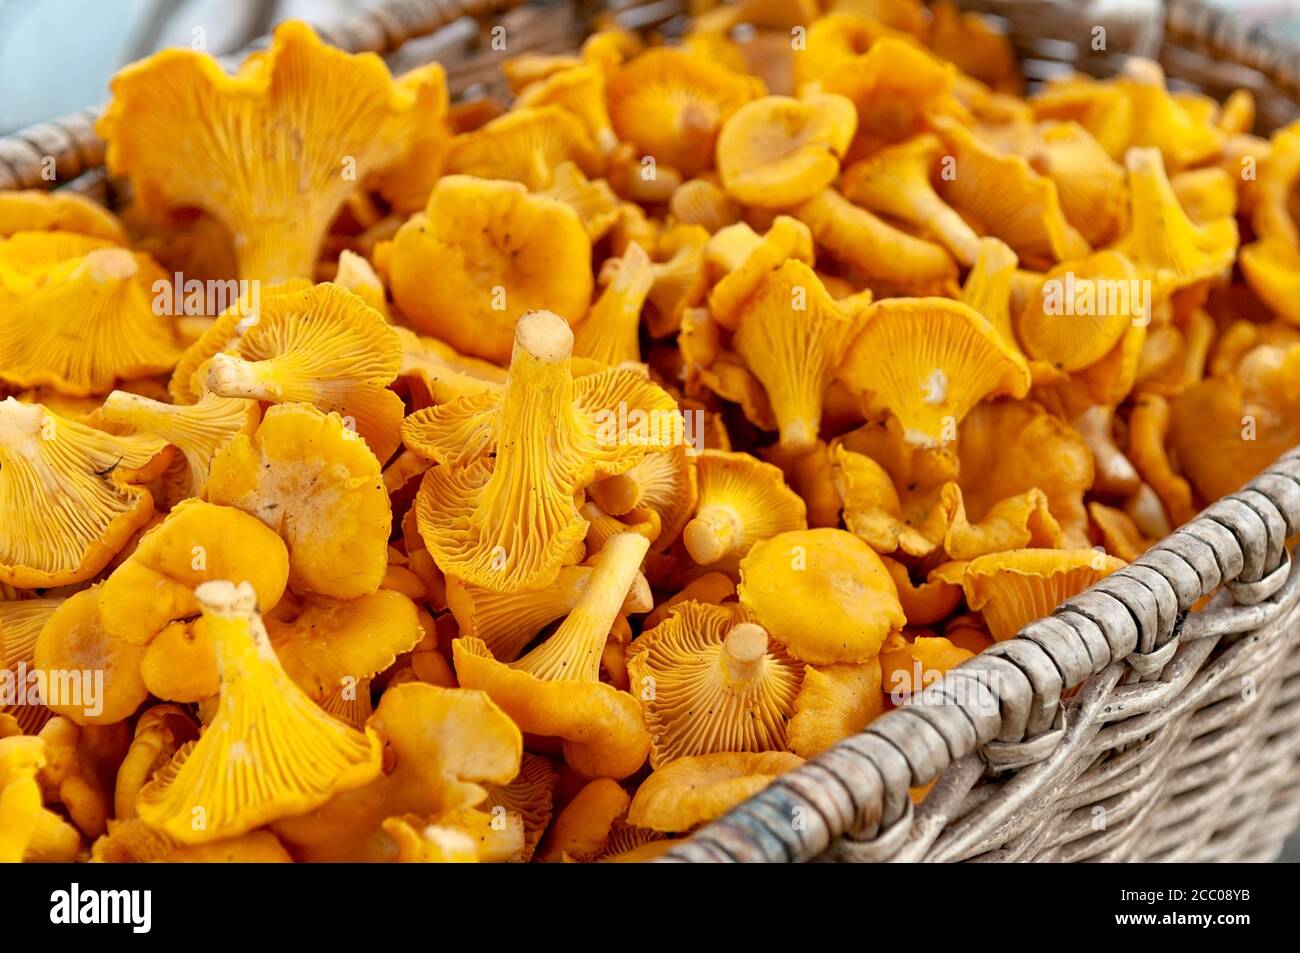 Funghi chanterelle in un cesto di vimini. Cantharellaceae Basidiomiceti. Foto Stock